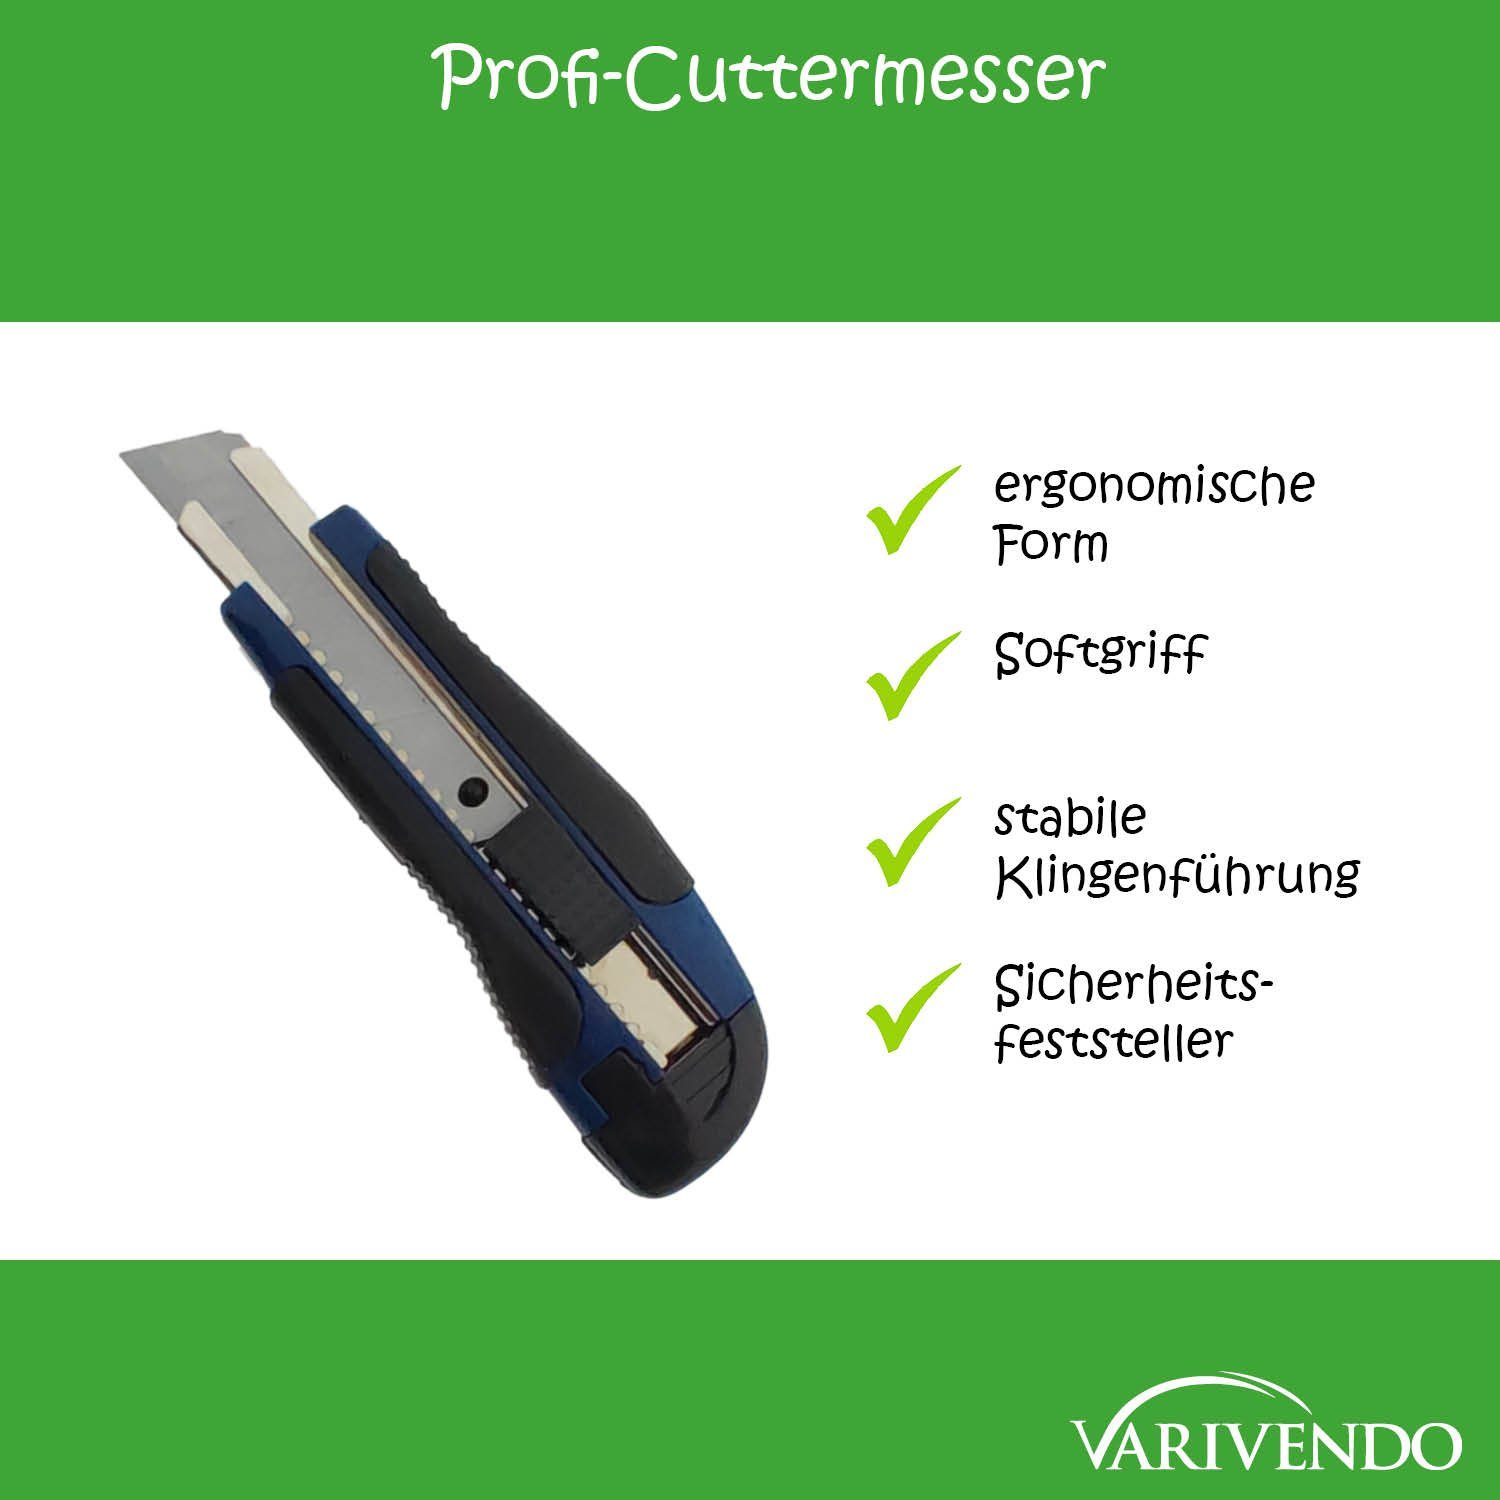 Cuttermesser Stammartikel blau Auto-Lock 18mm Profi-Cuttermesser Teppichmesser